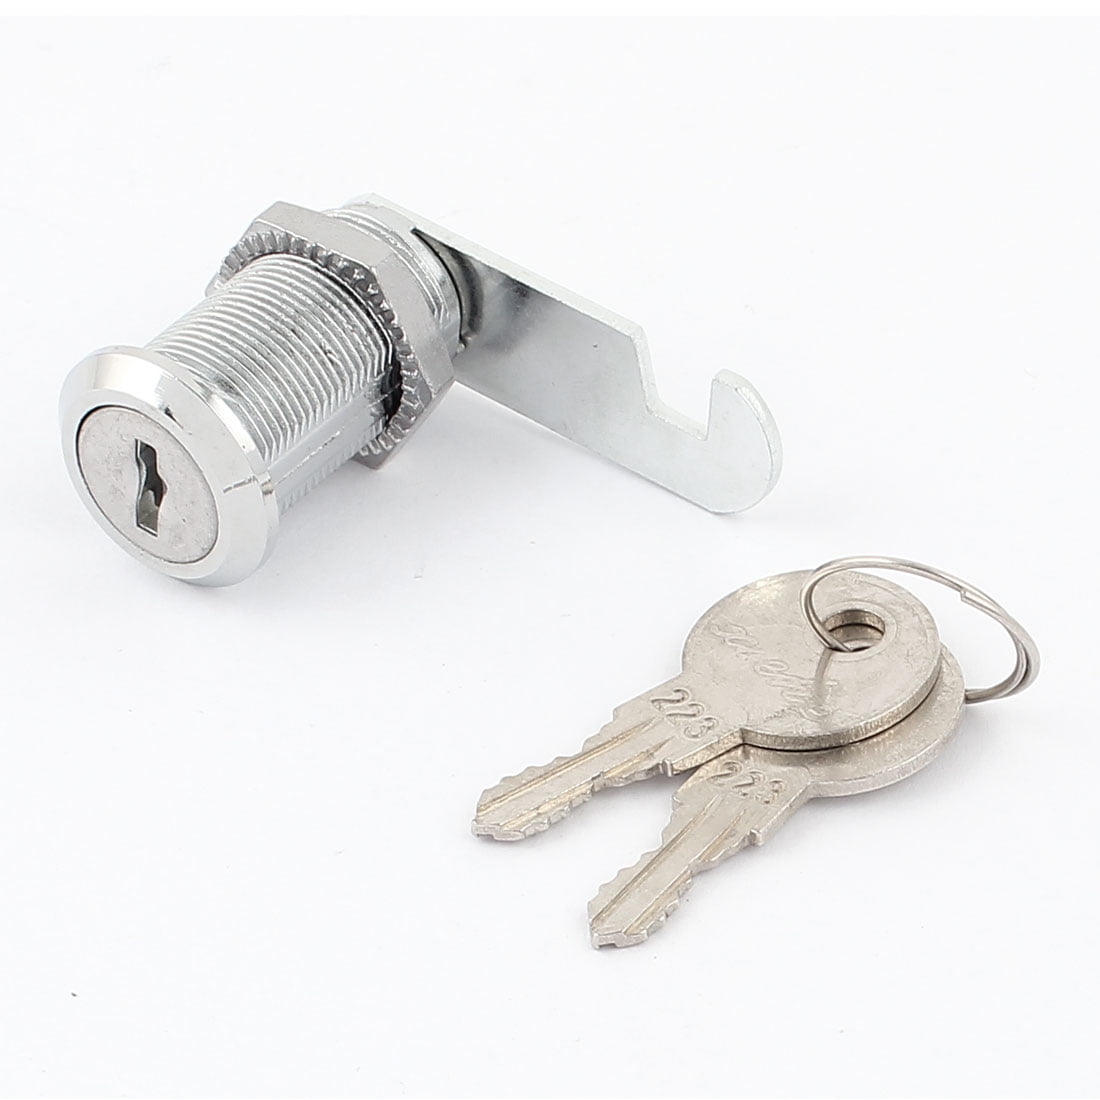 Tubular Cam Lock 1 1/8" Chrome Finish Key Alike Cabinet Toolbox Safe Drawer 